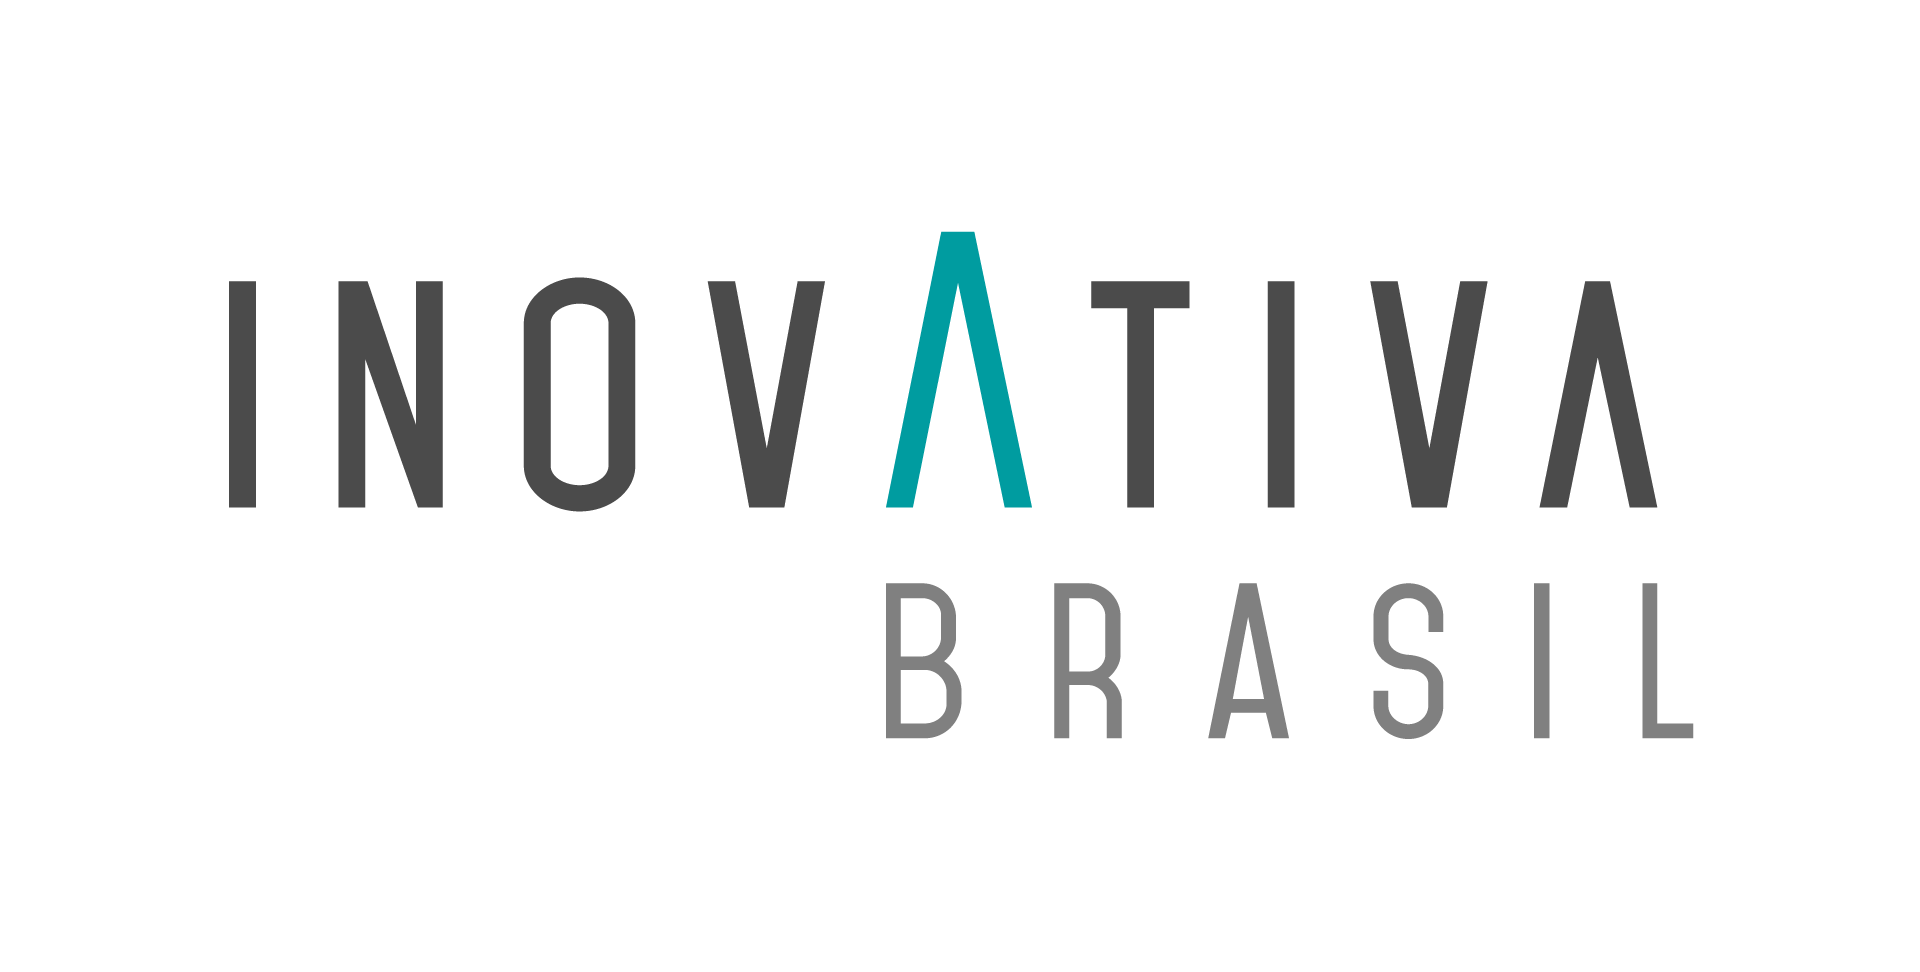 Inovativa Brasil